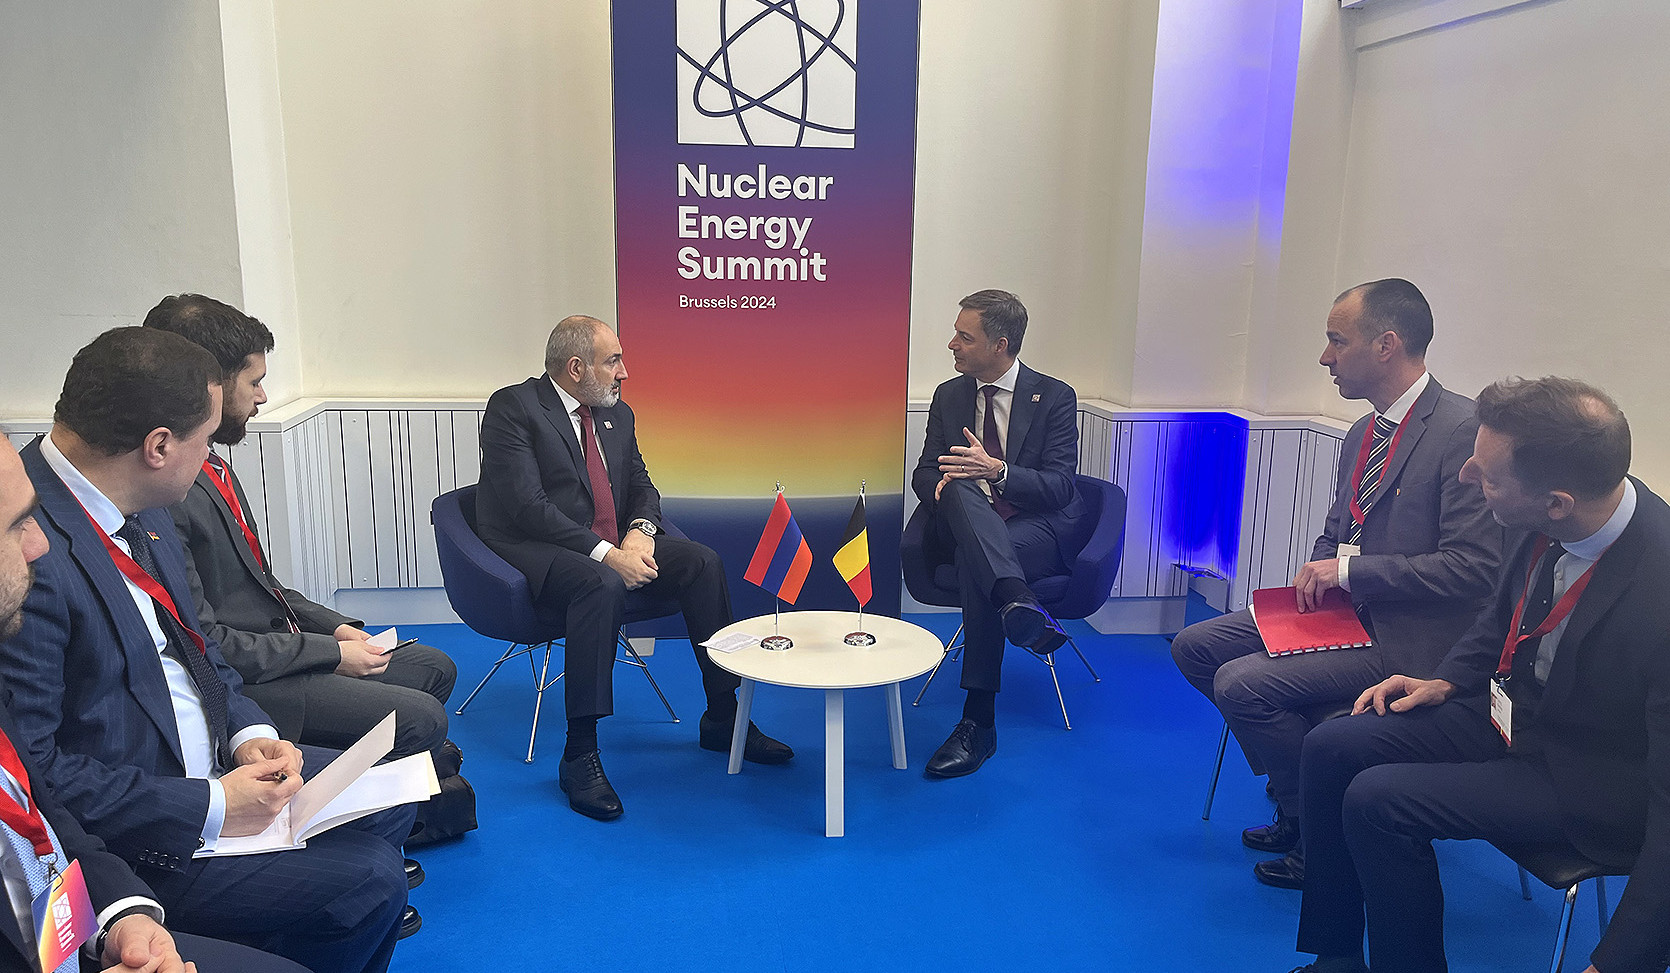 Նիկոլ Փաշինյանը Բելգիայի վարչապետին է ներկայացրել «Խաղաղության խաչմերուկ» նախագիծը և դրա սկզբունքները